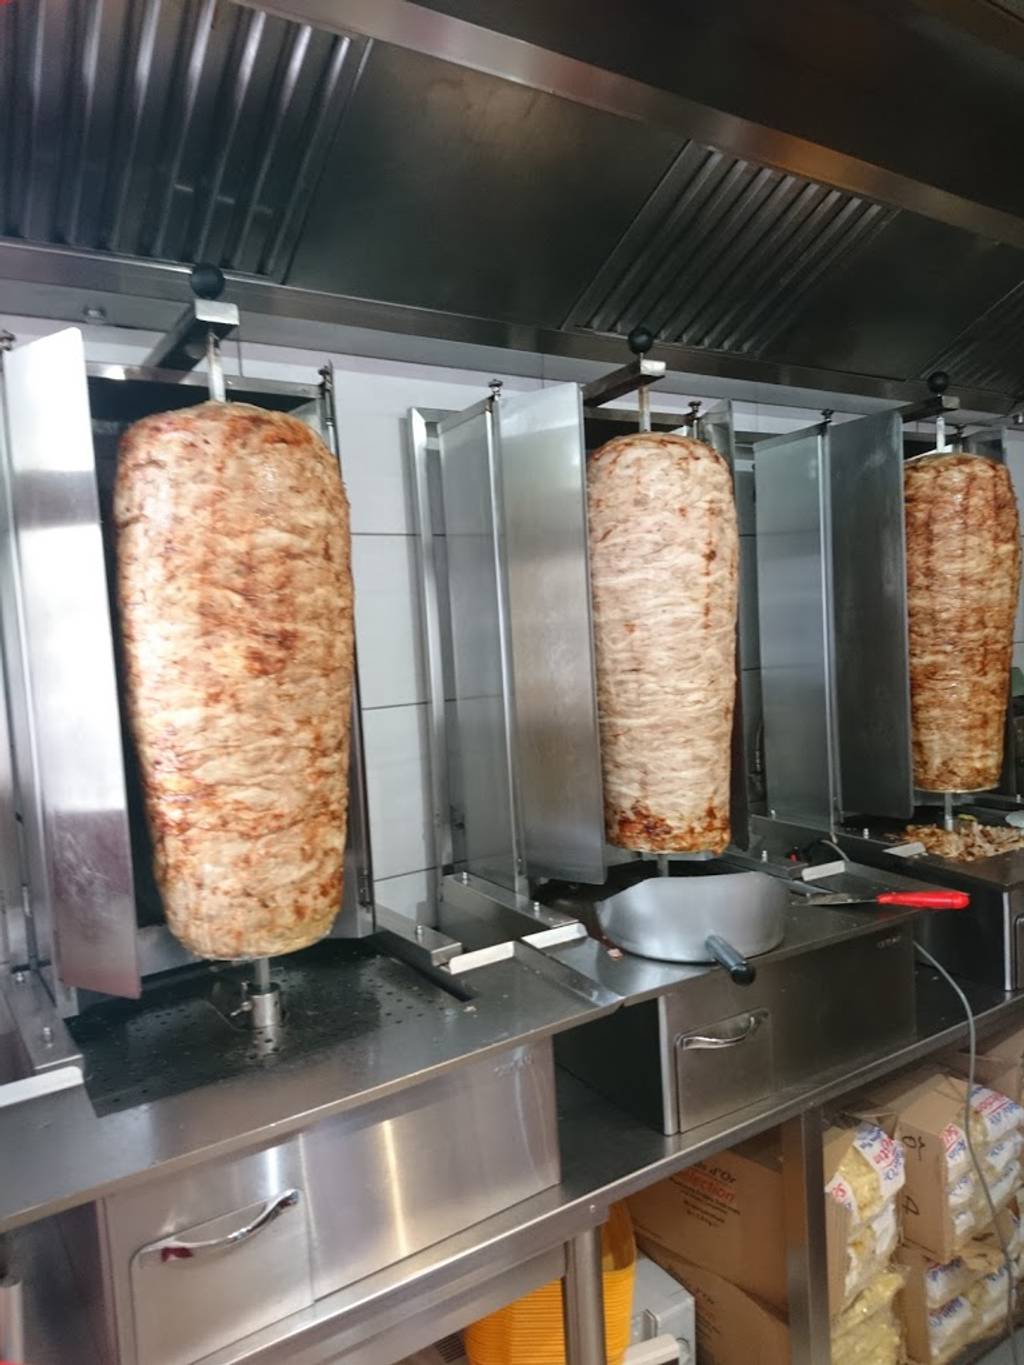 L'Istanbul Reims - Food Cuisine Shawarma Kürtőskalács Dish